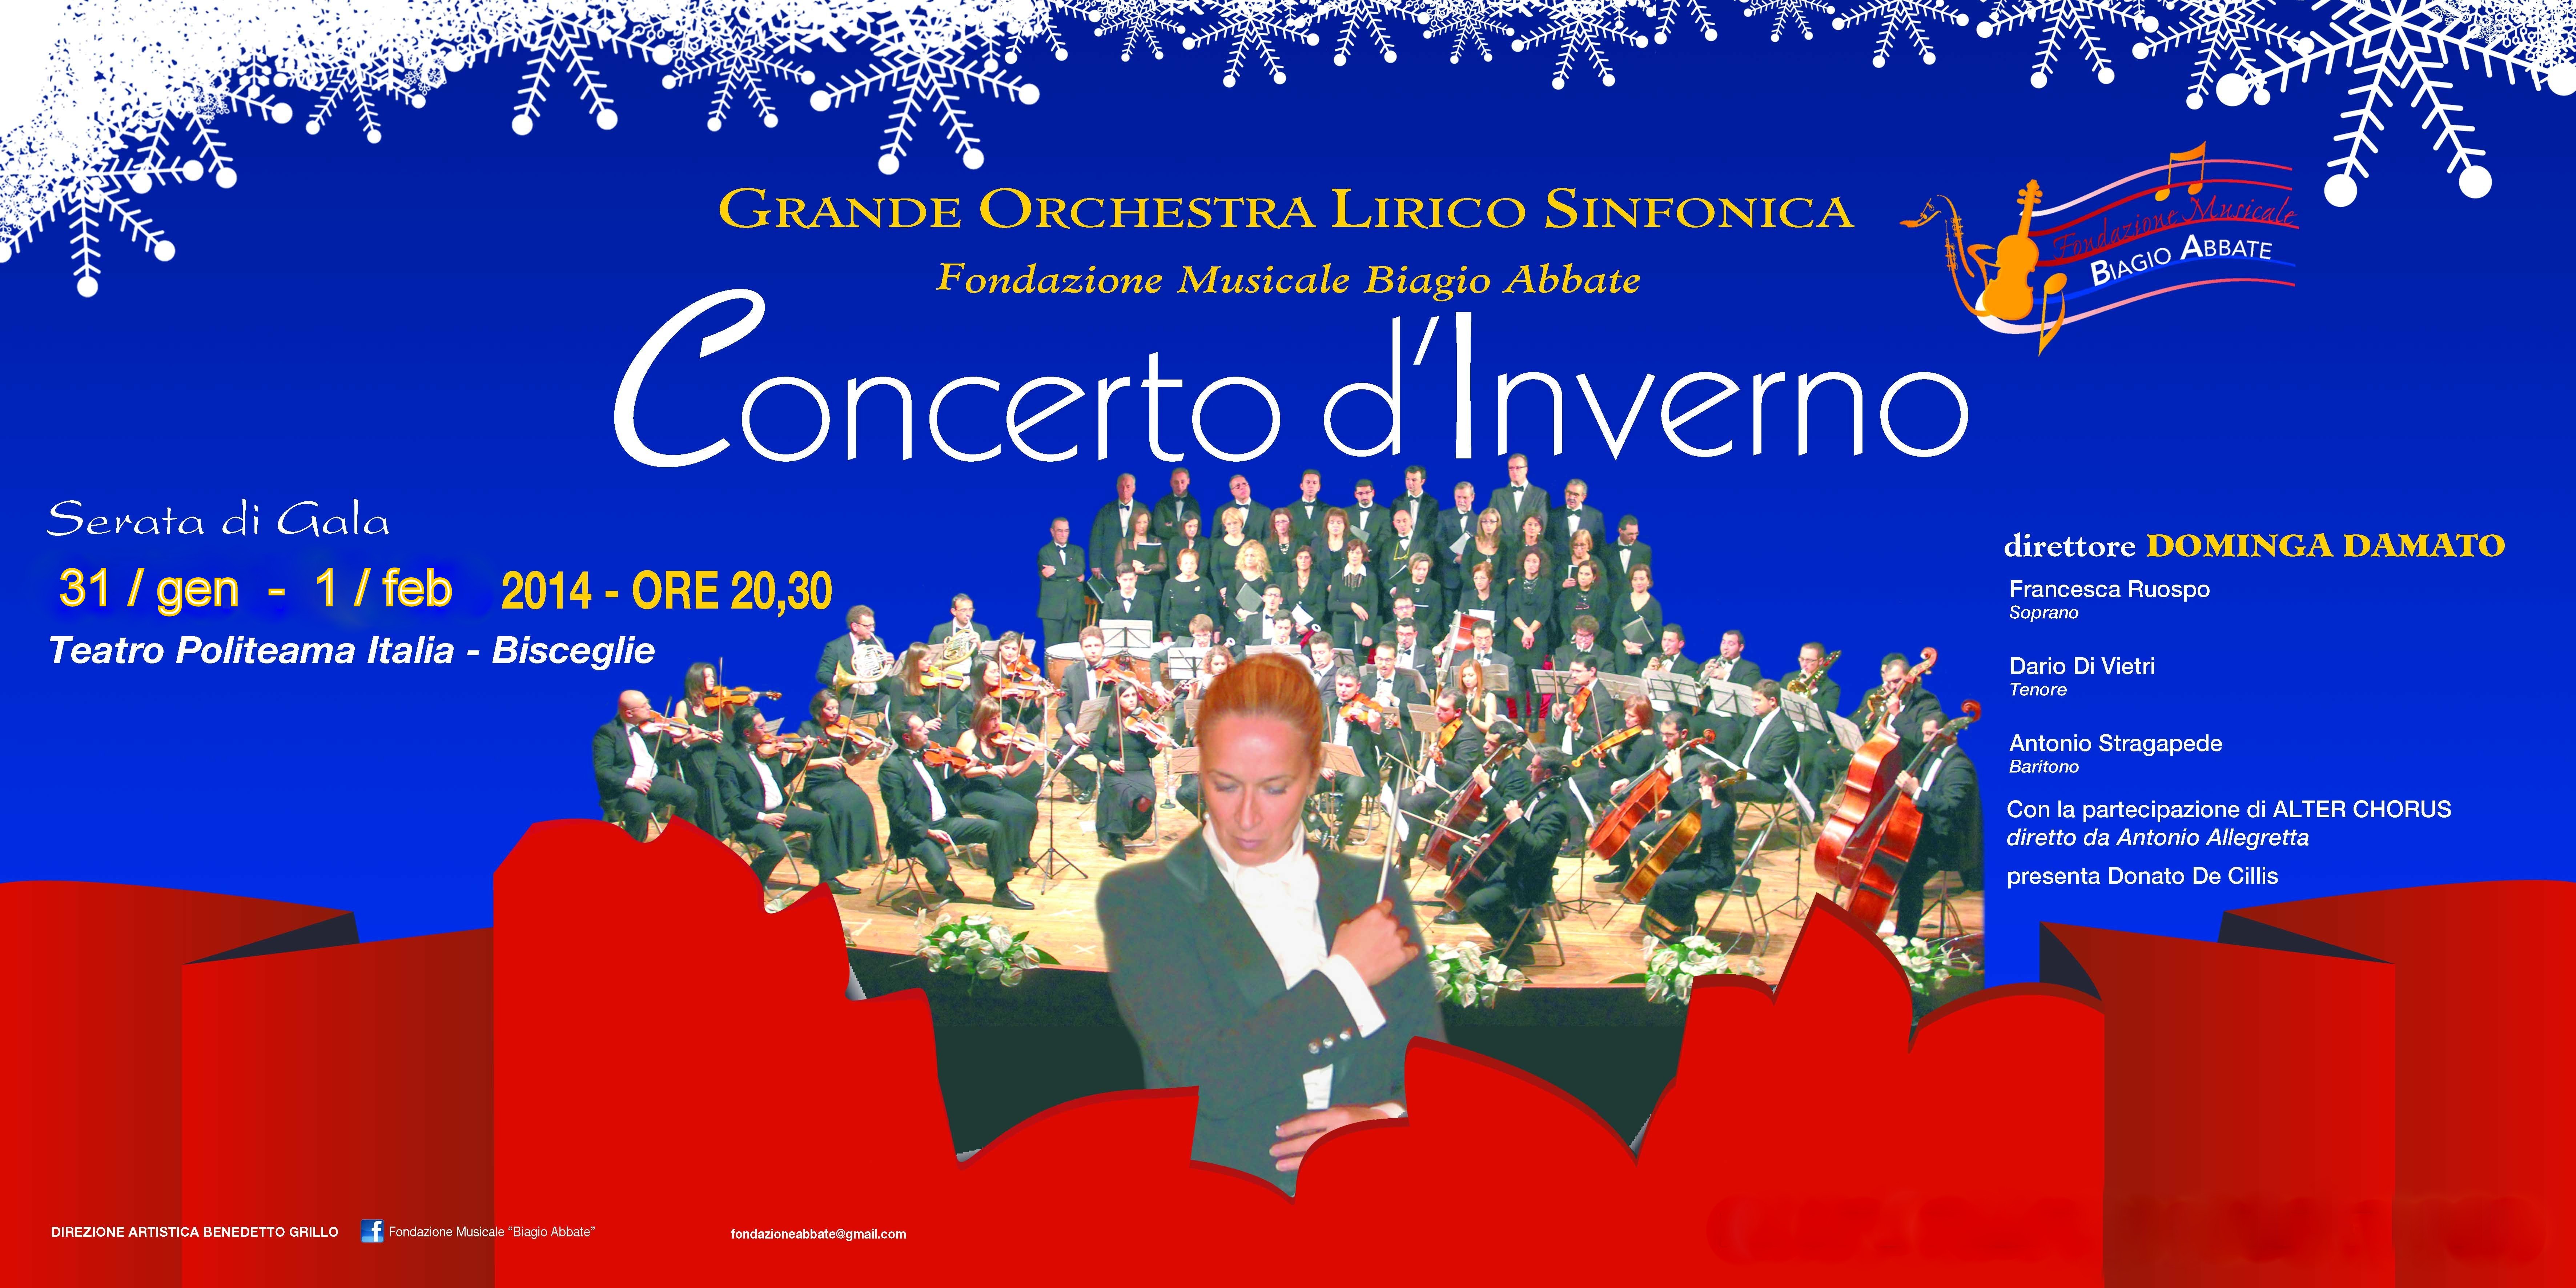  Concerto d'Inverno 2014 